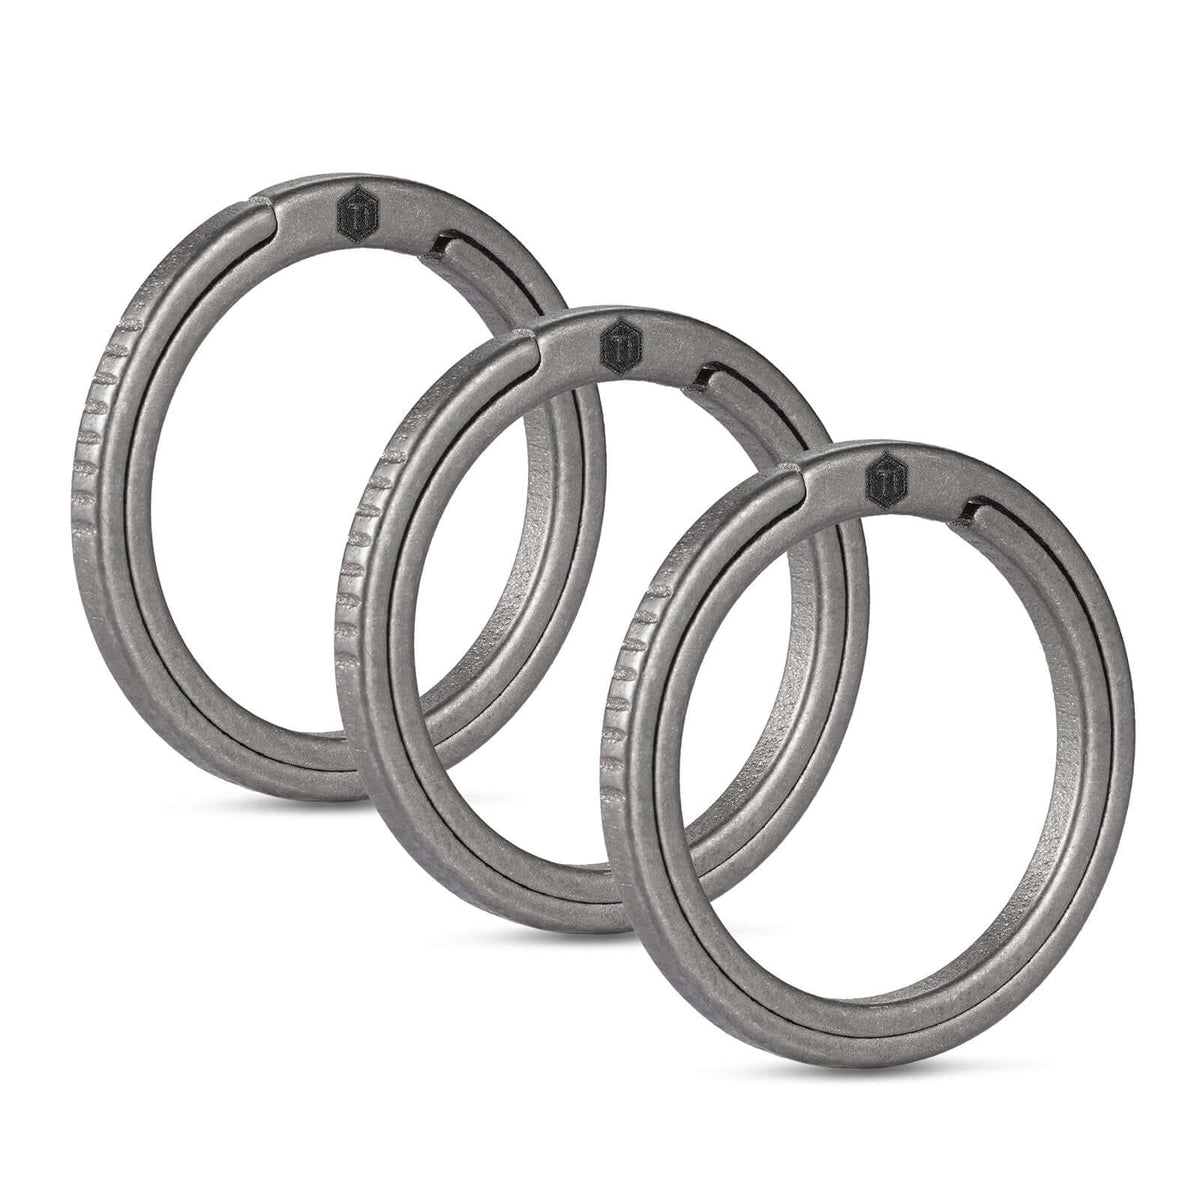 KA08 Titanium Alloy Key Ring Set (3L)